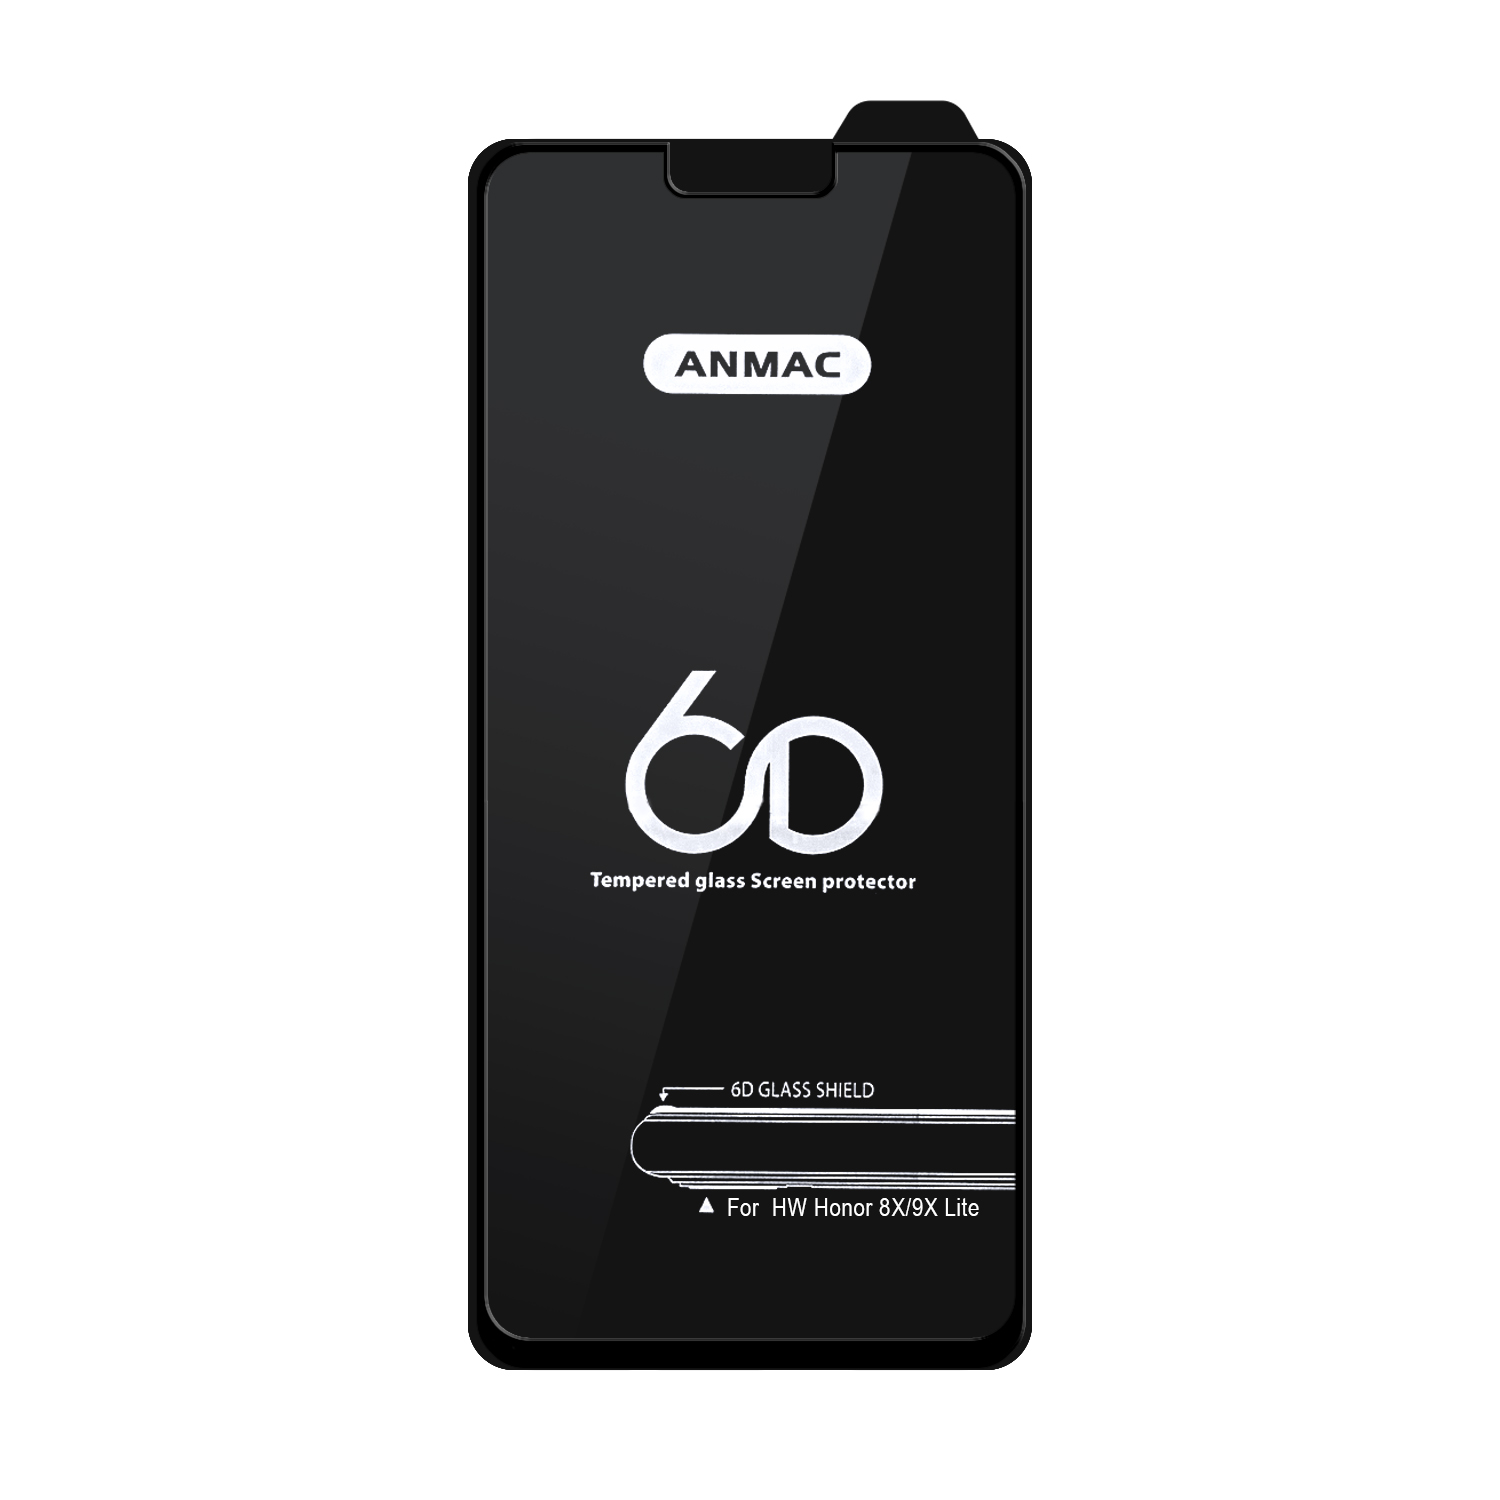 Защитное стекло Huawei Honor 8X/9X Lite  Anmac 6D Black без упаковки Арт.1137143